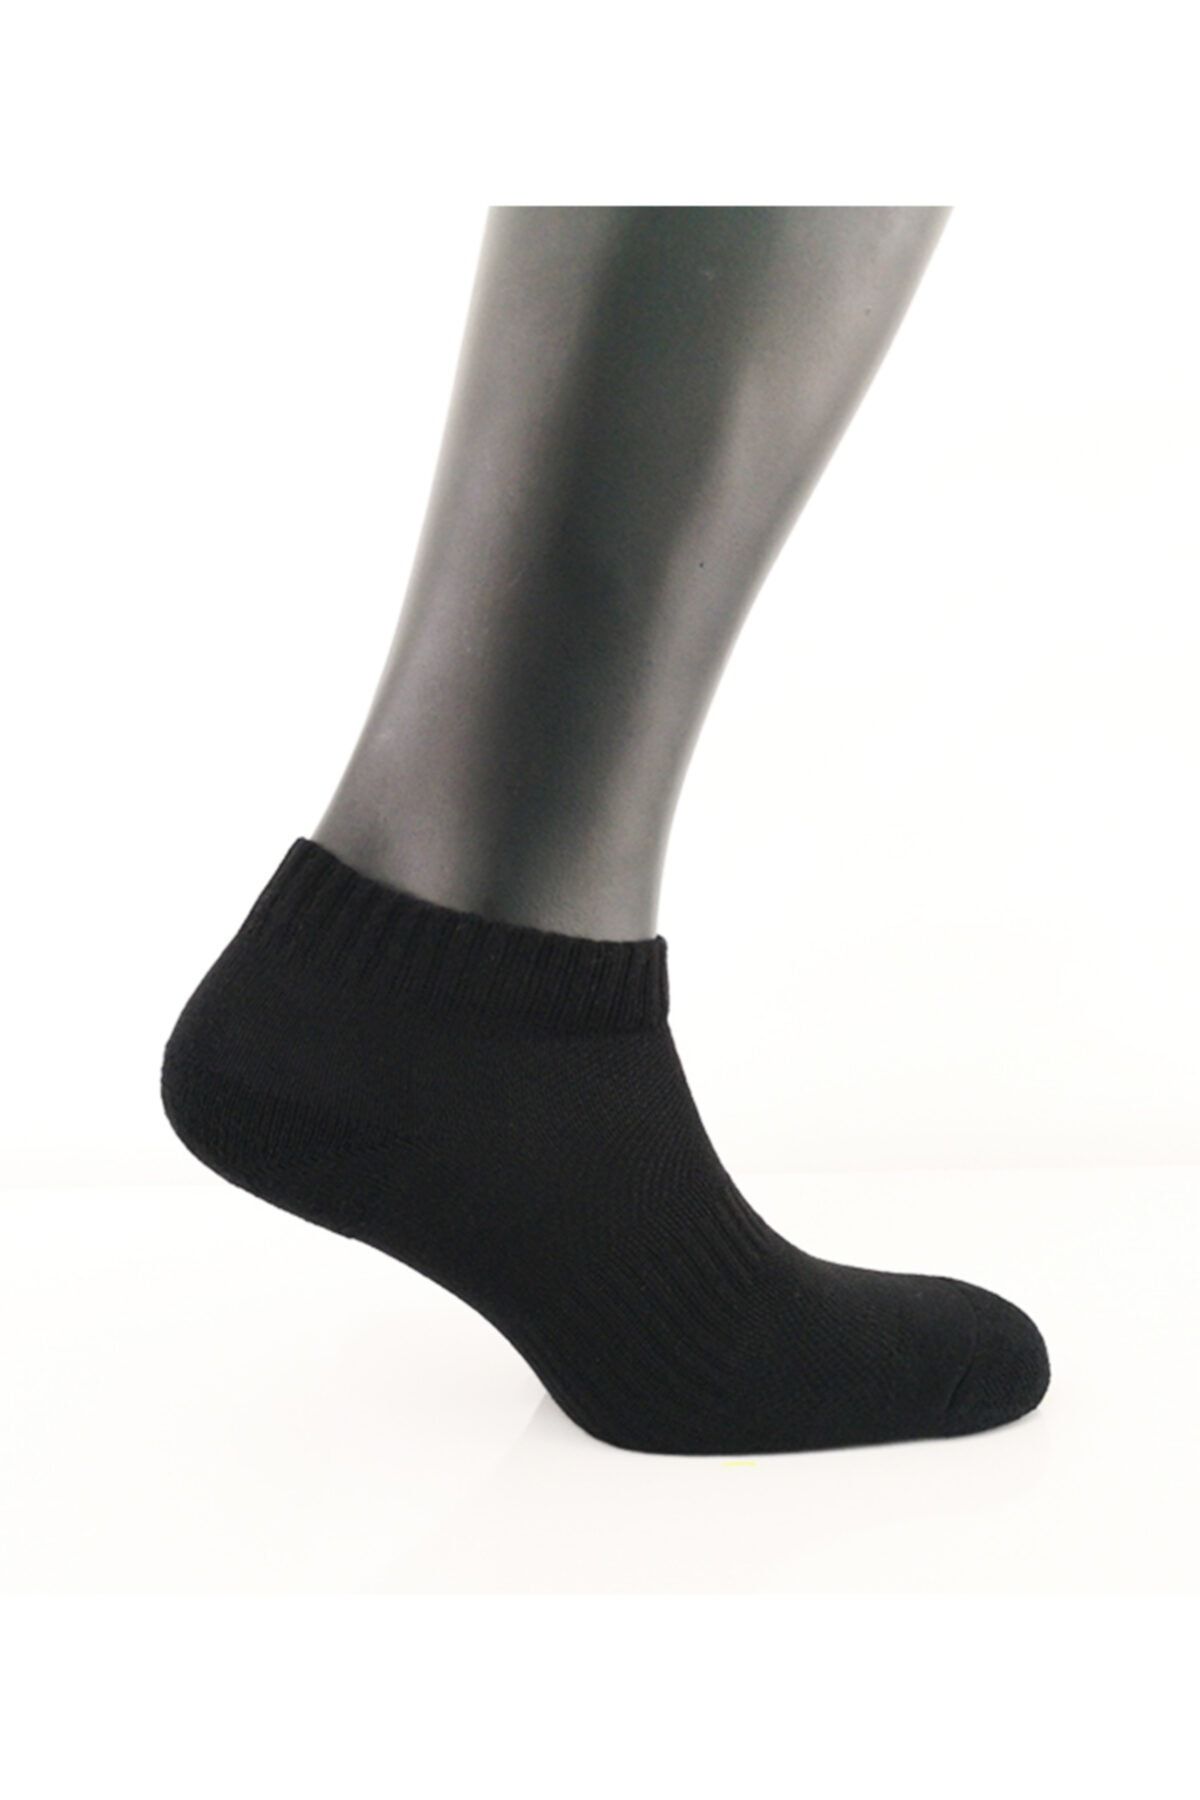 Blackspade Unisex Spor Çorap 9920 - Siyah